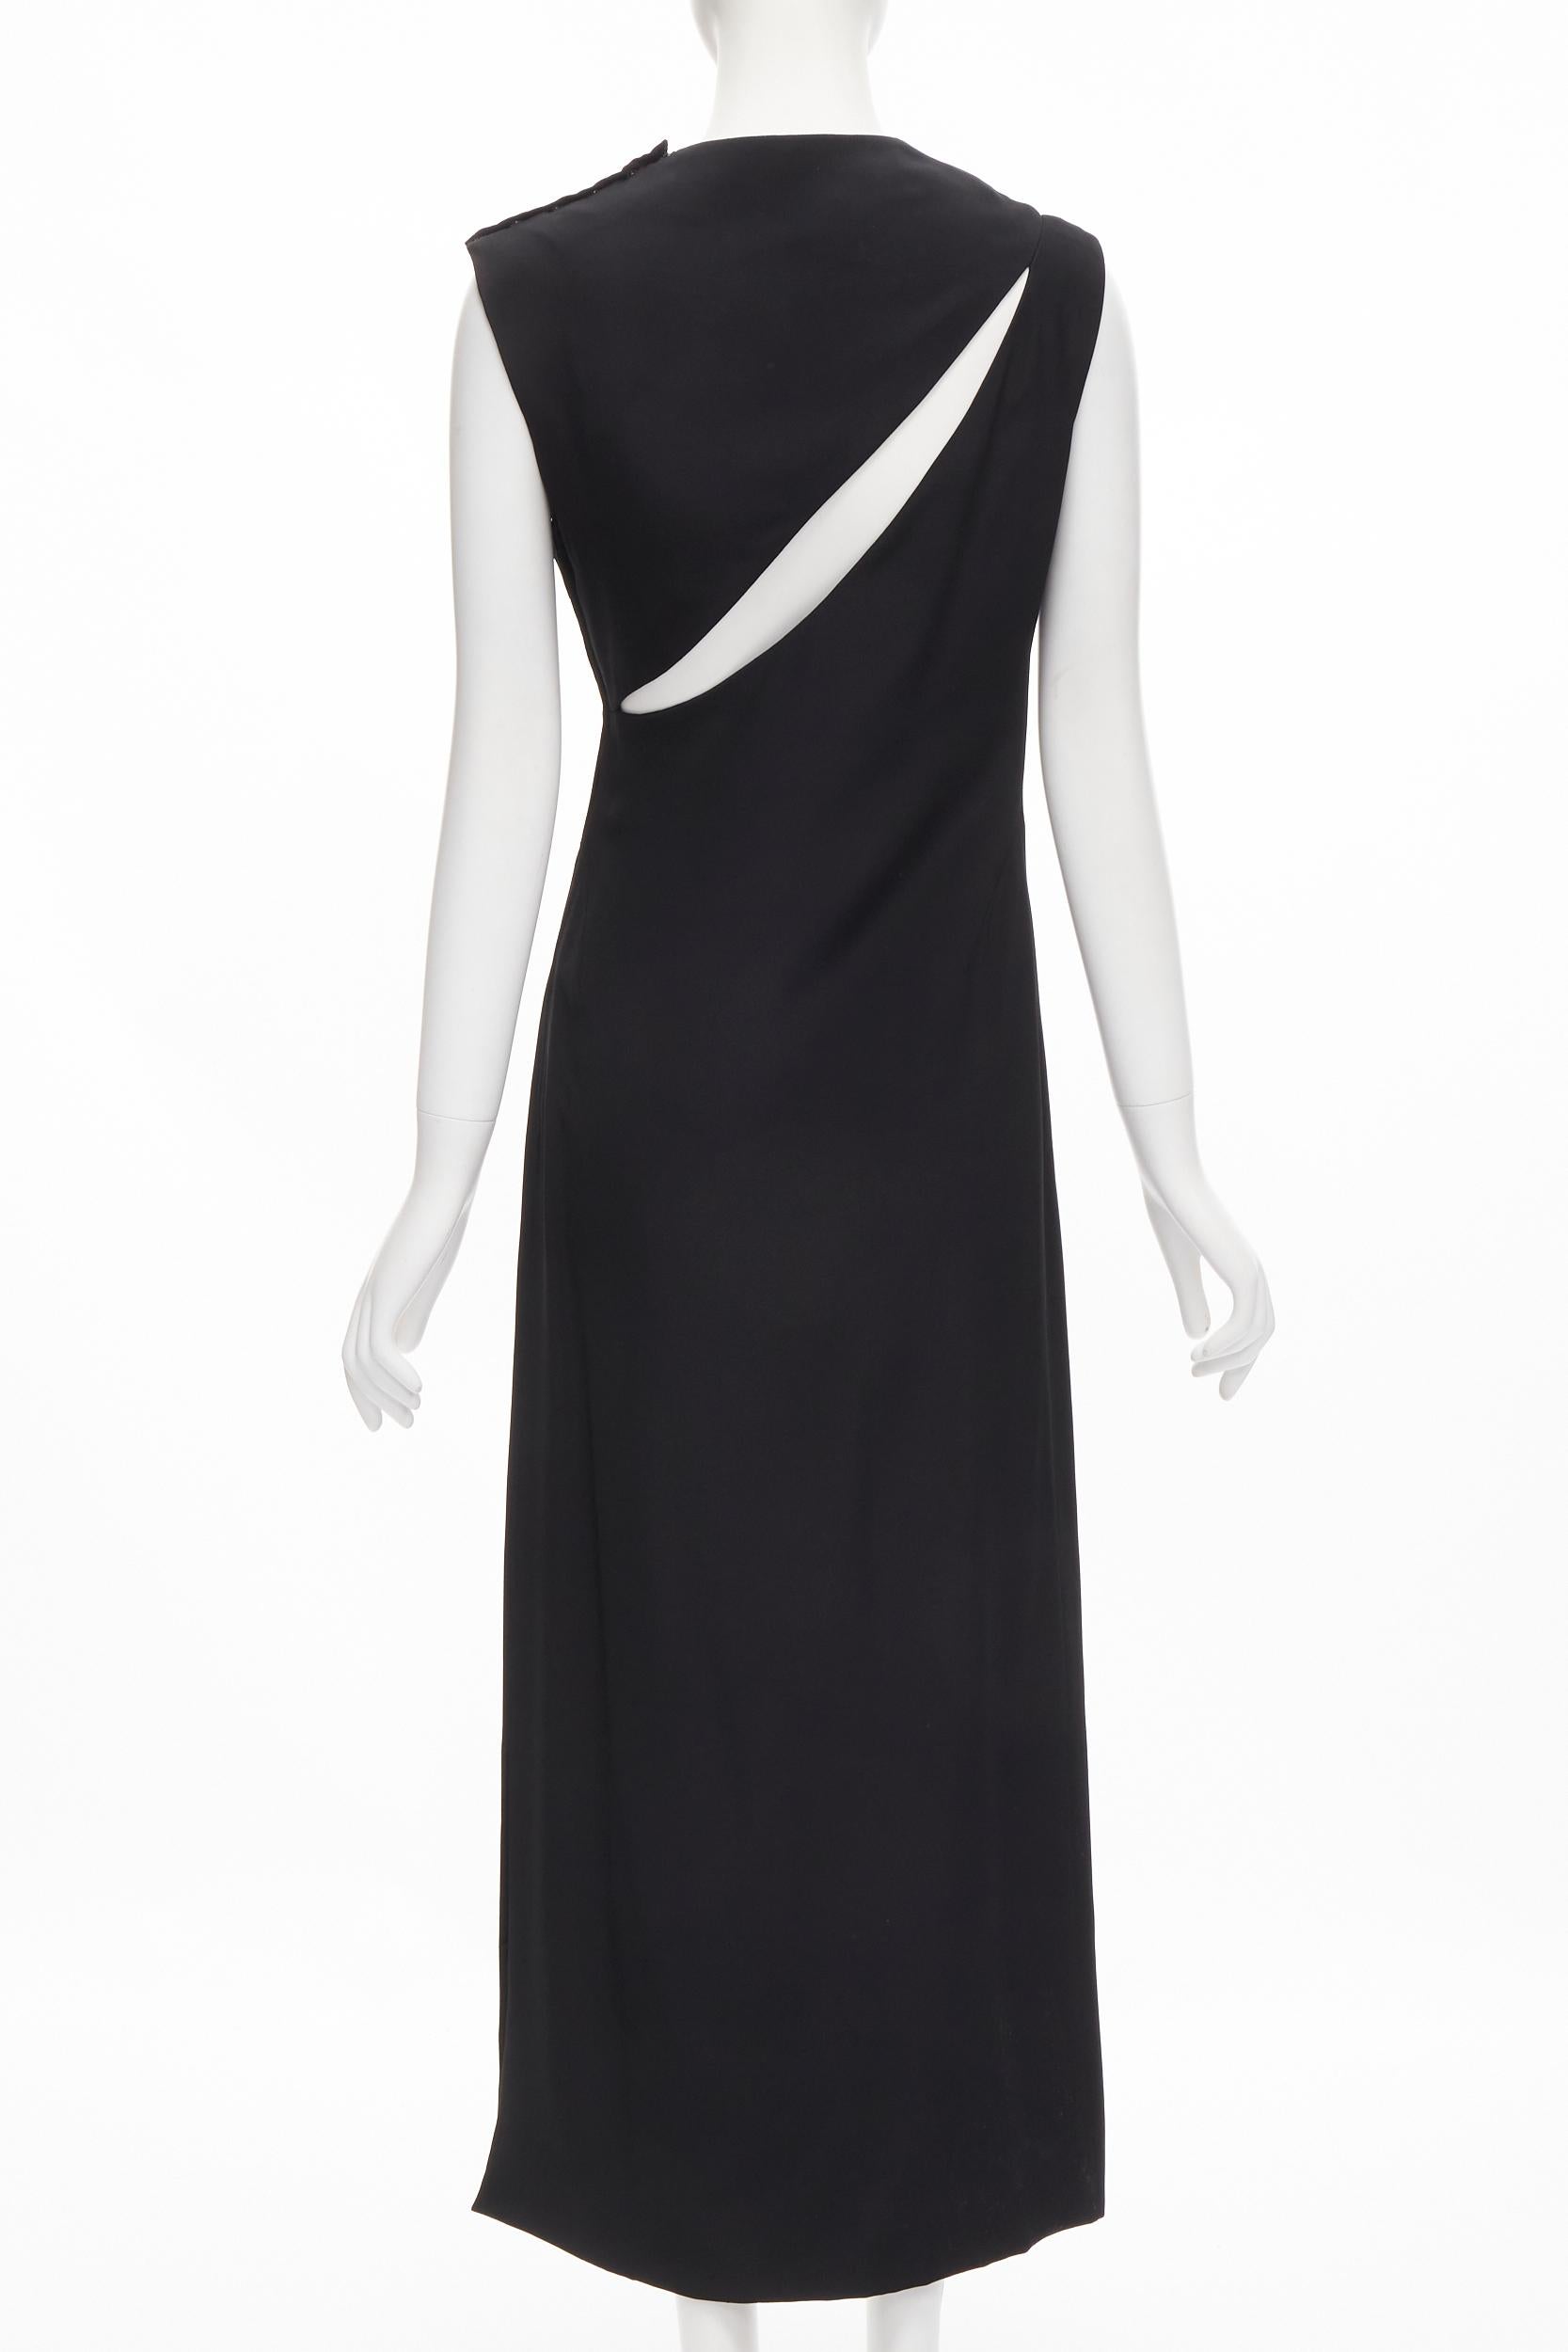 Women's MADAME GRES Haute Couture Paris 1972 black crepe slash slit cut out dress M For Sale